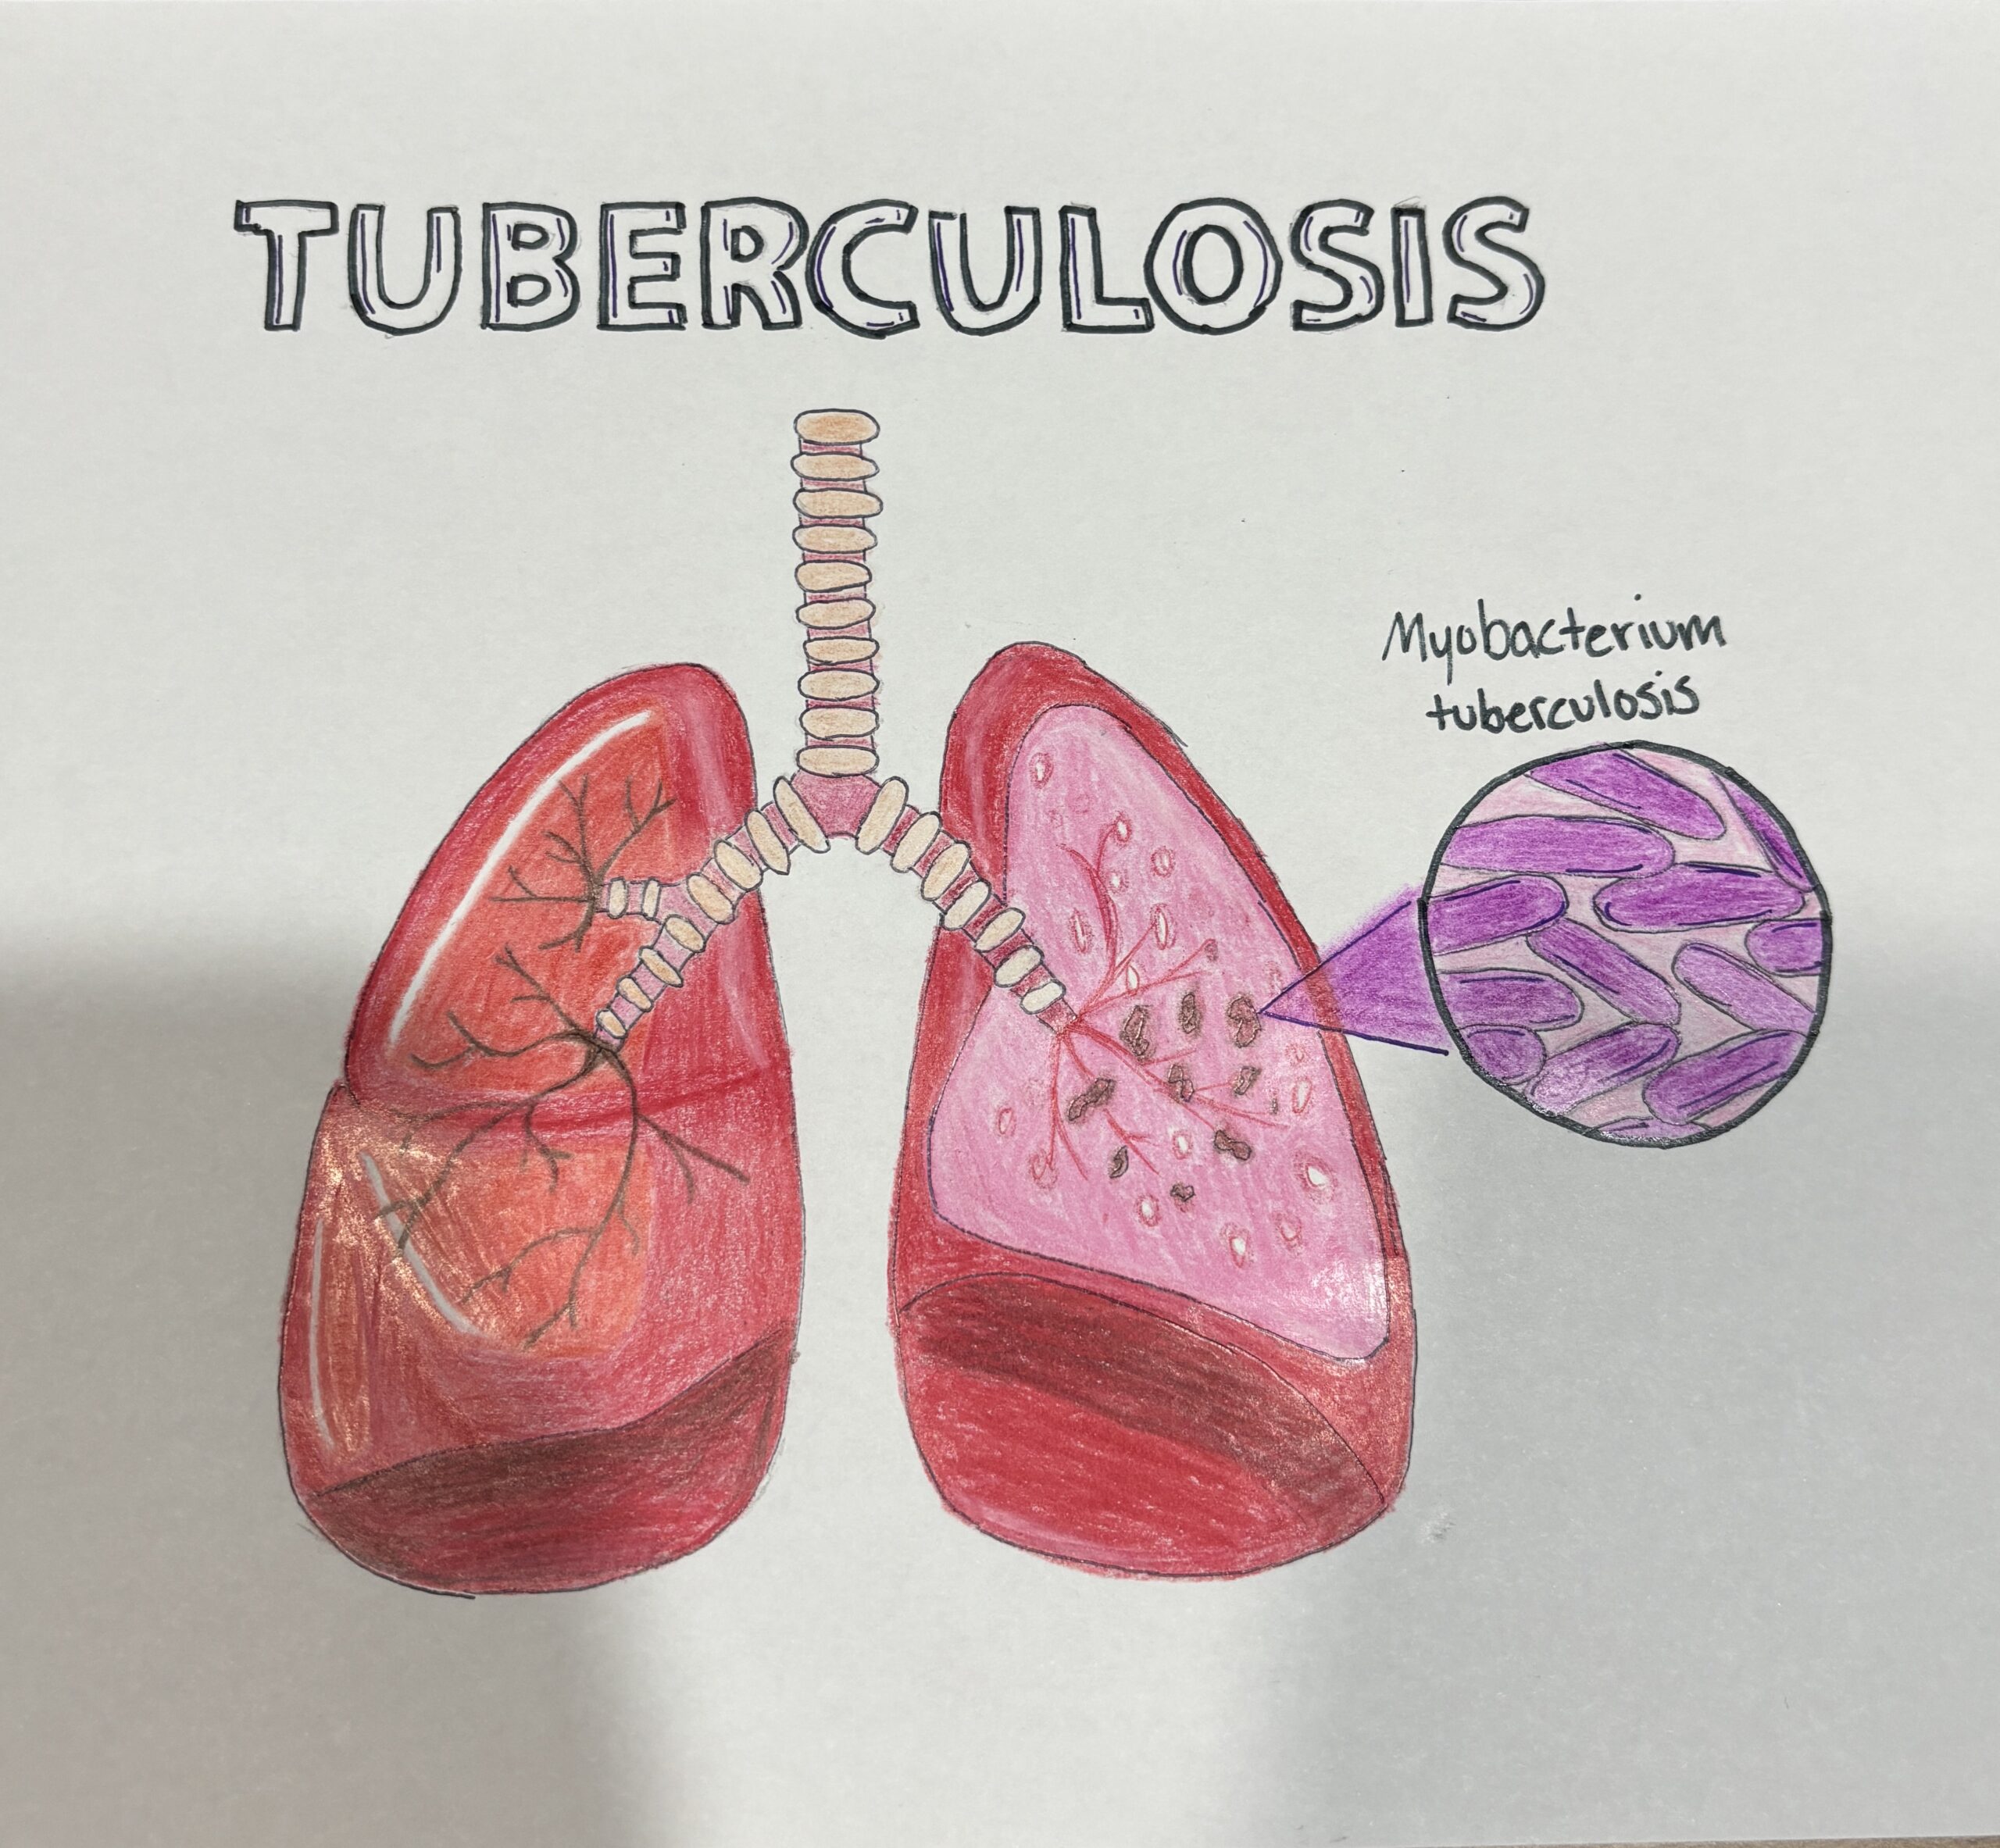 Tuberculosis by Amelie Collard